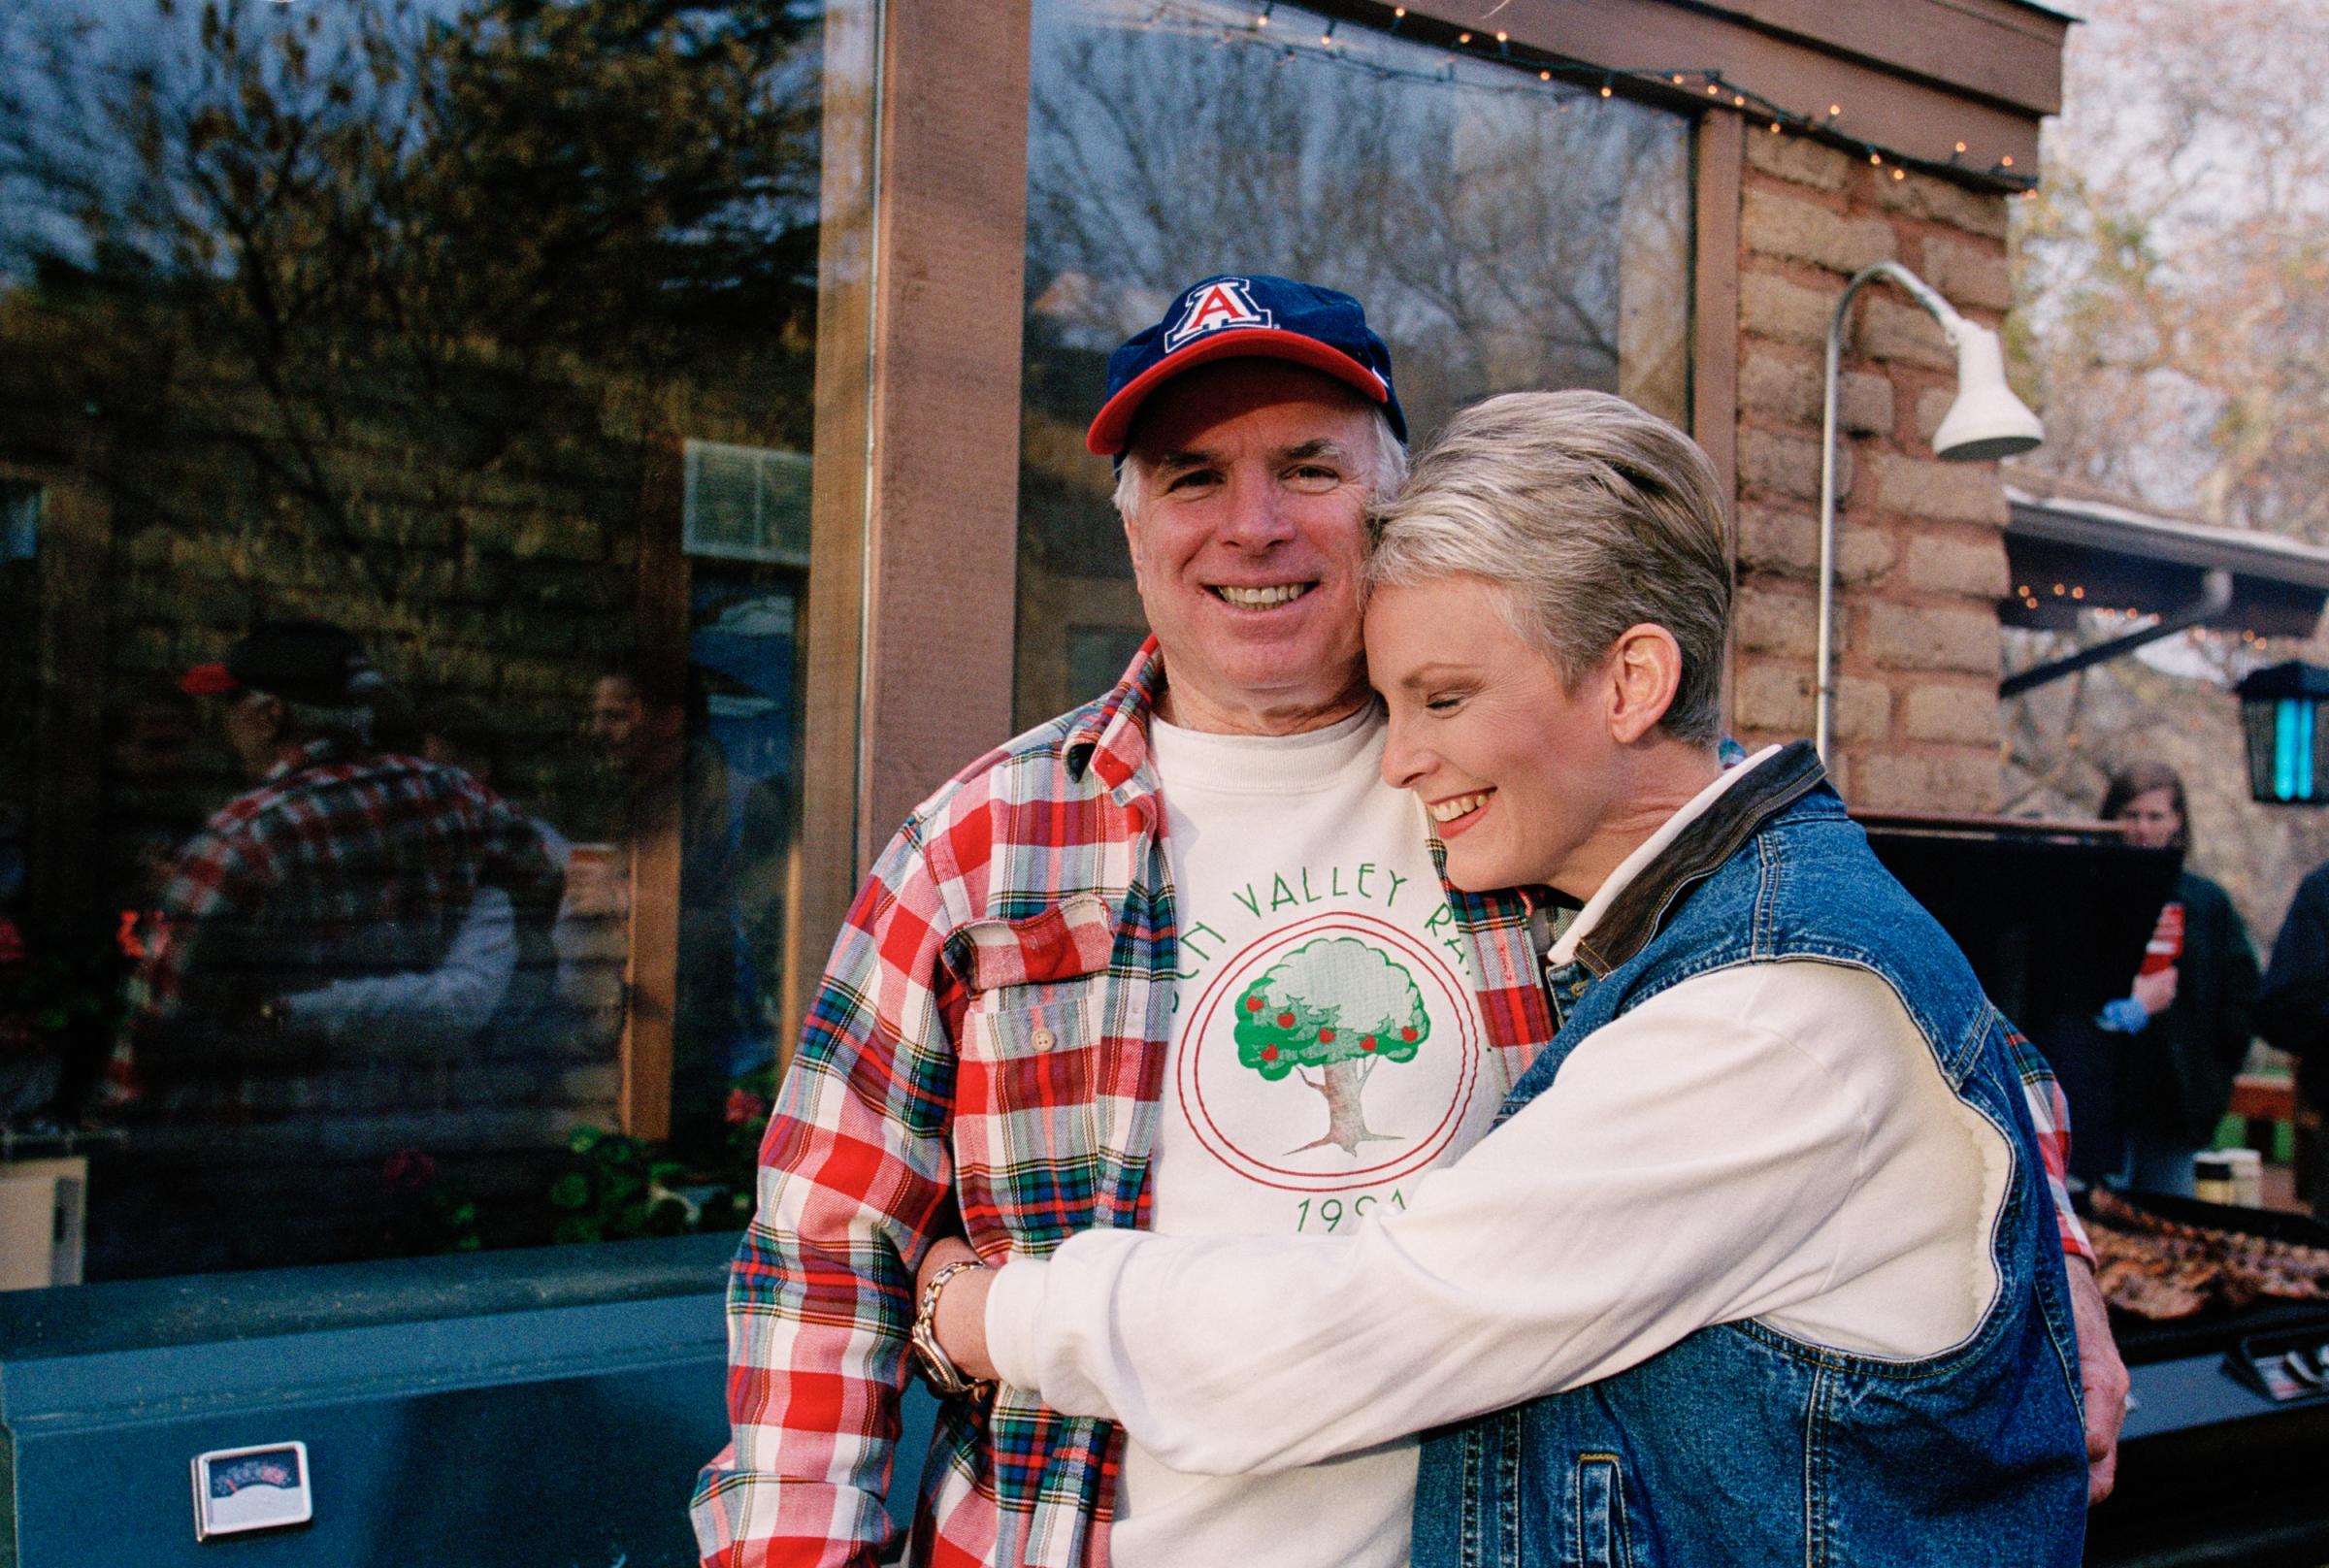 John and Cindy McCain at the McCain Ranch